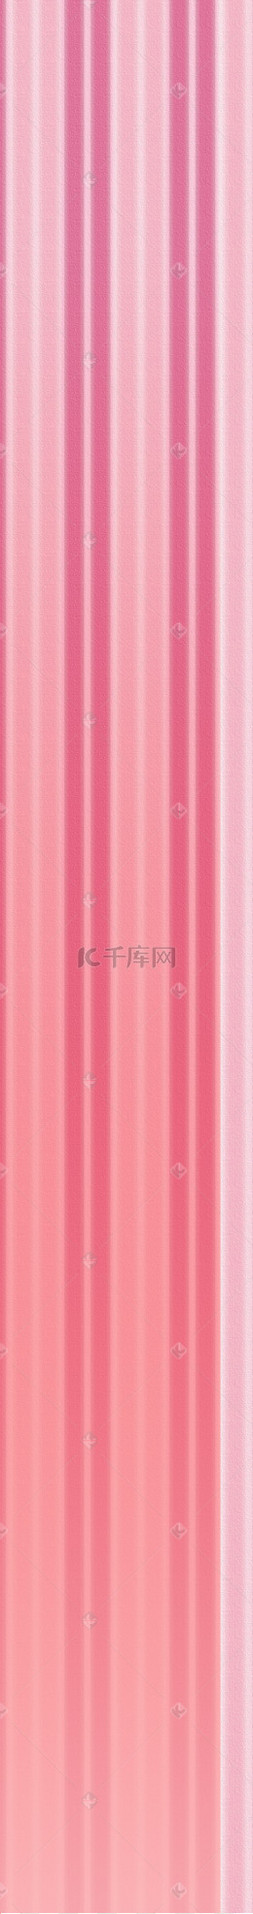 女王女神节首页图片_天猫背景粉红色